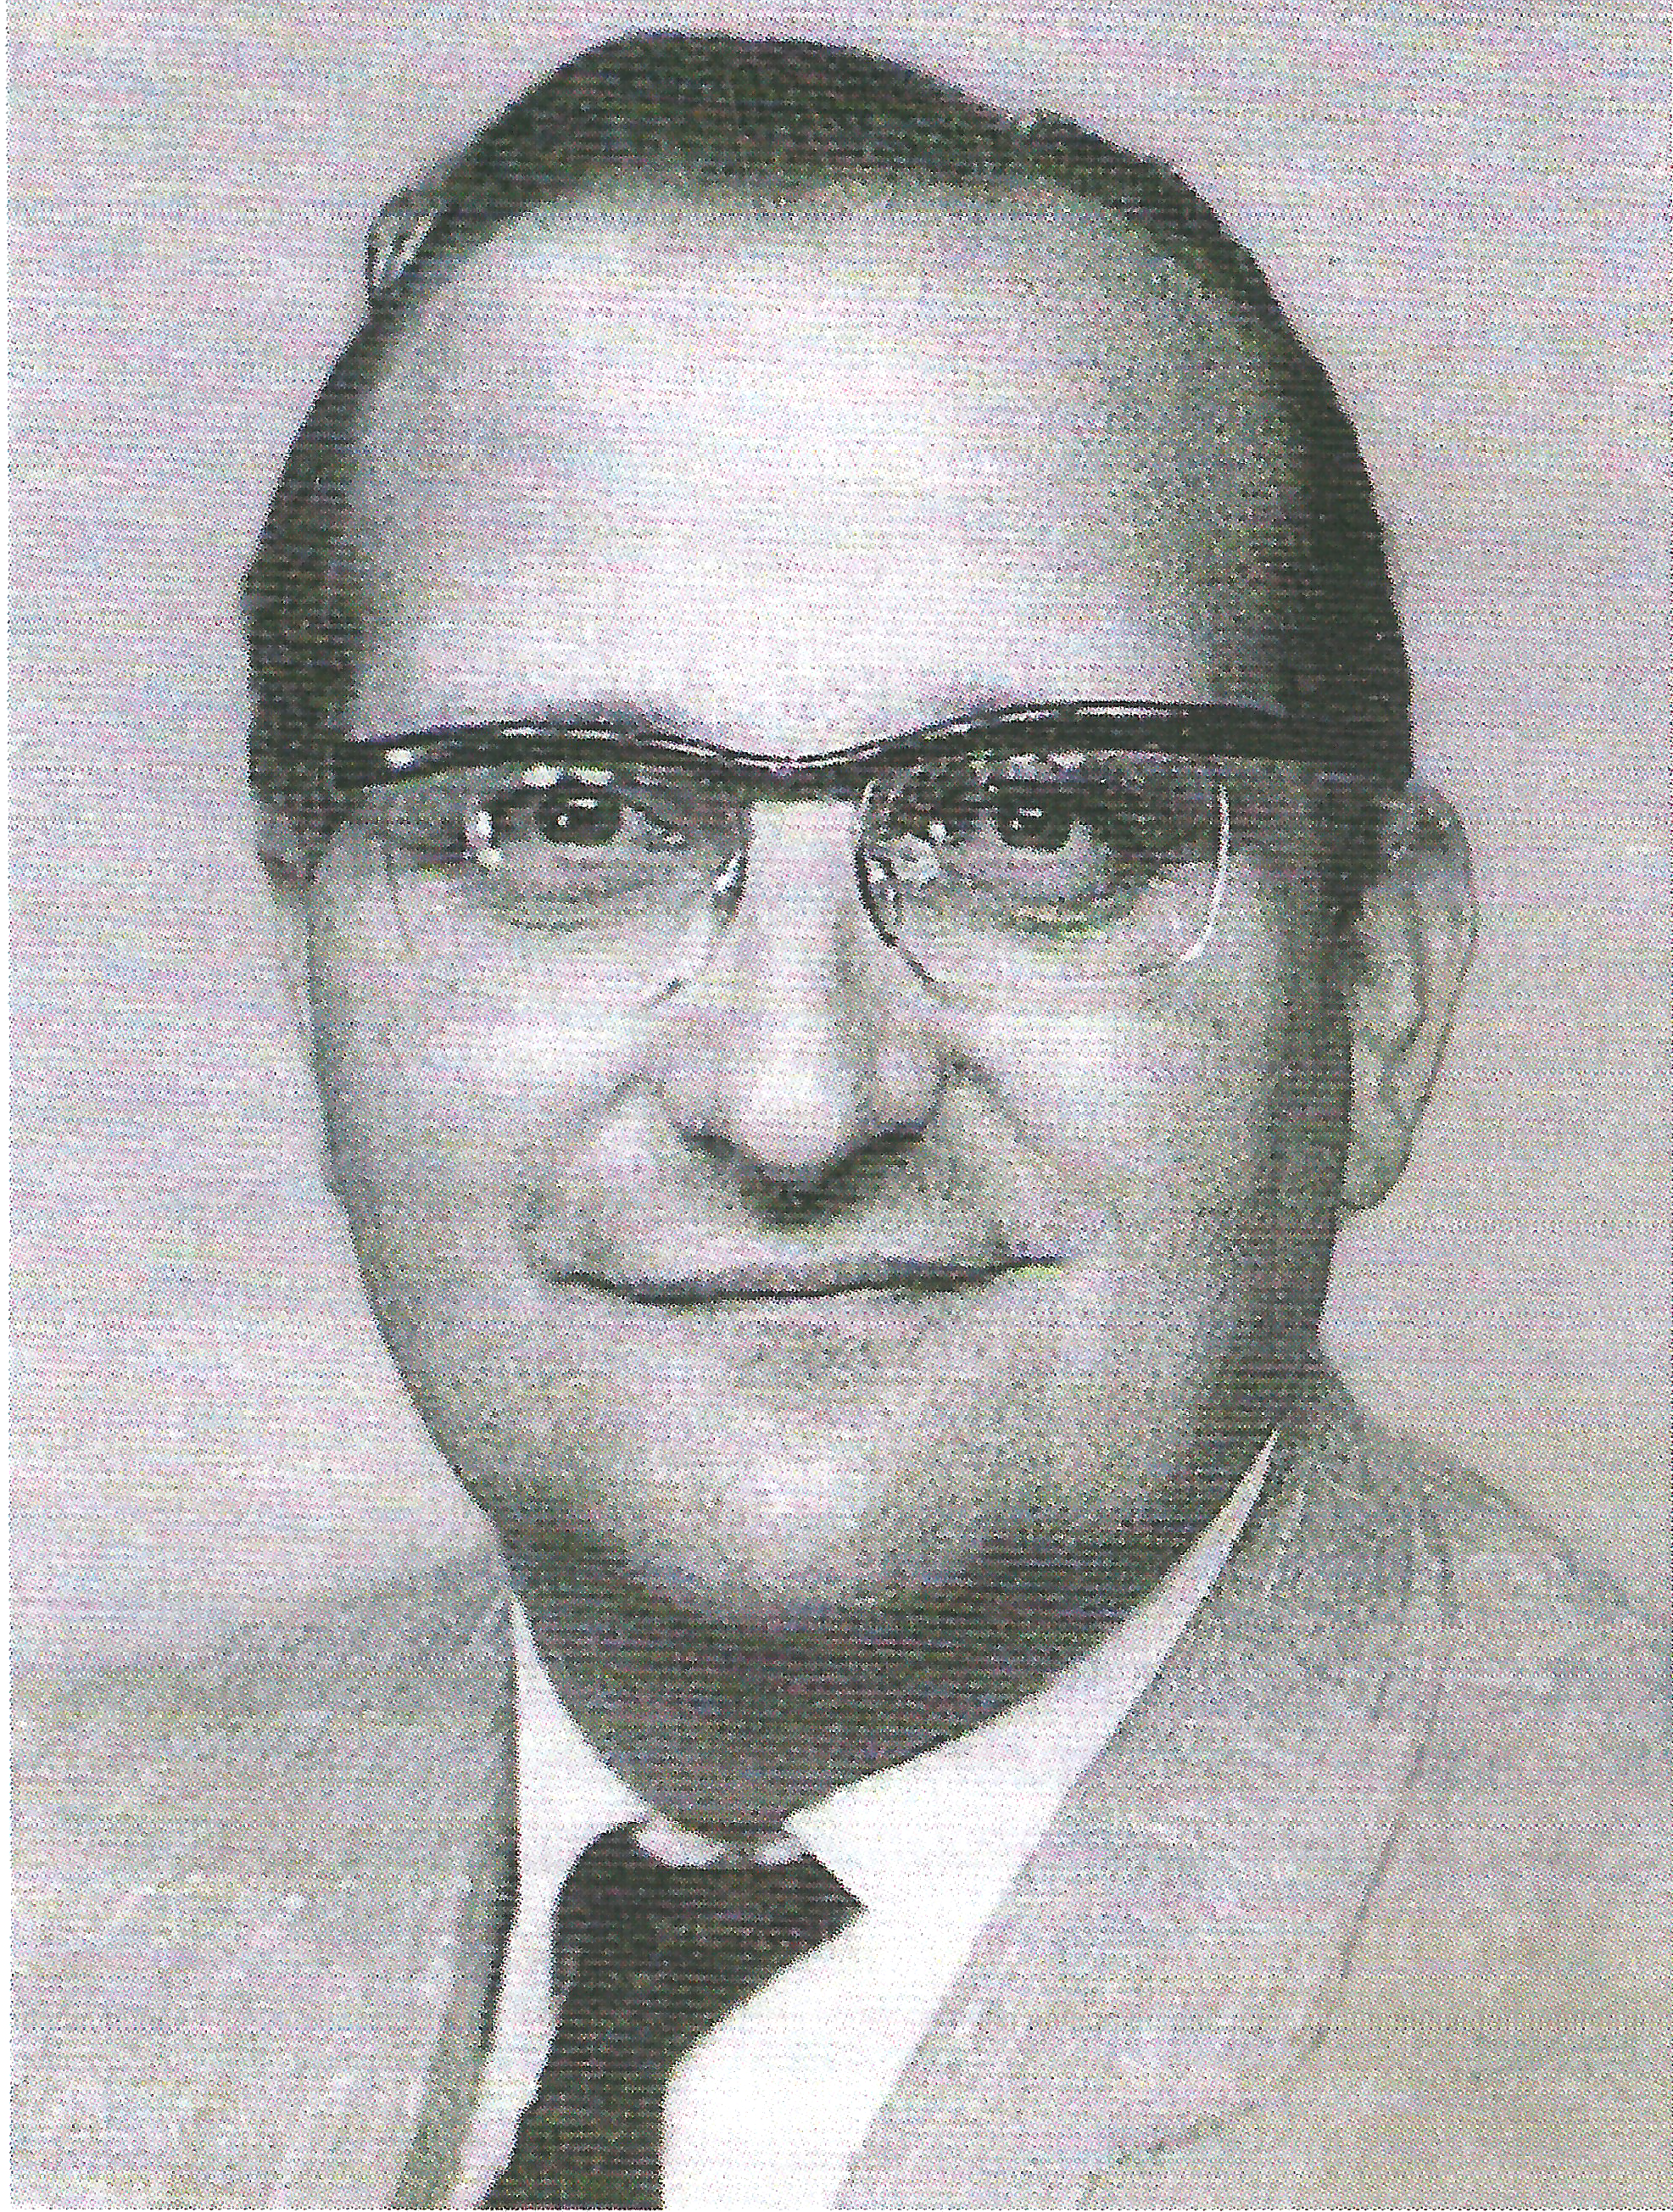 Dr. Bruce Copen